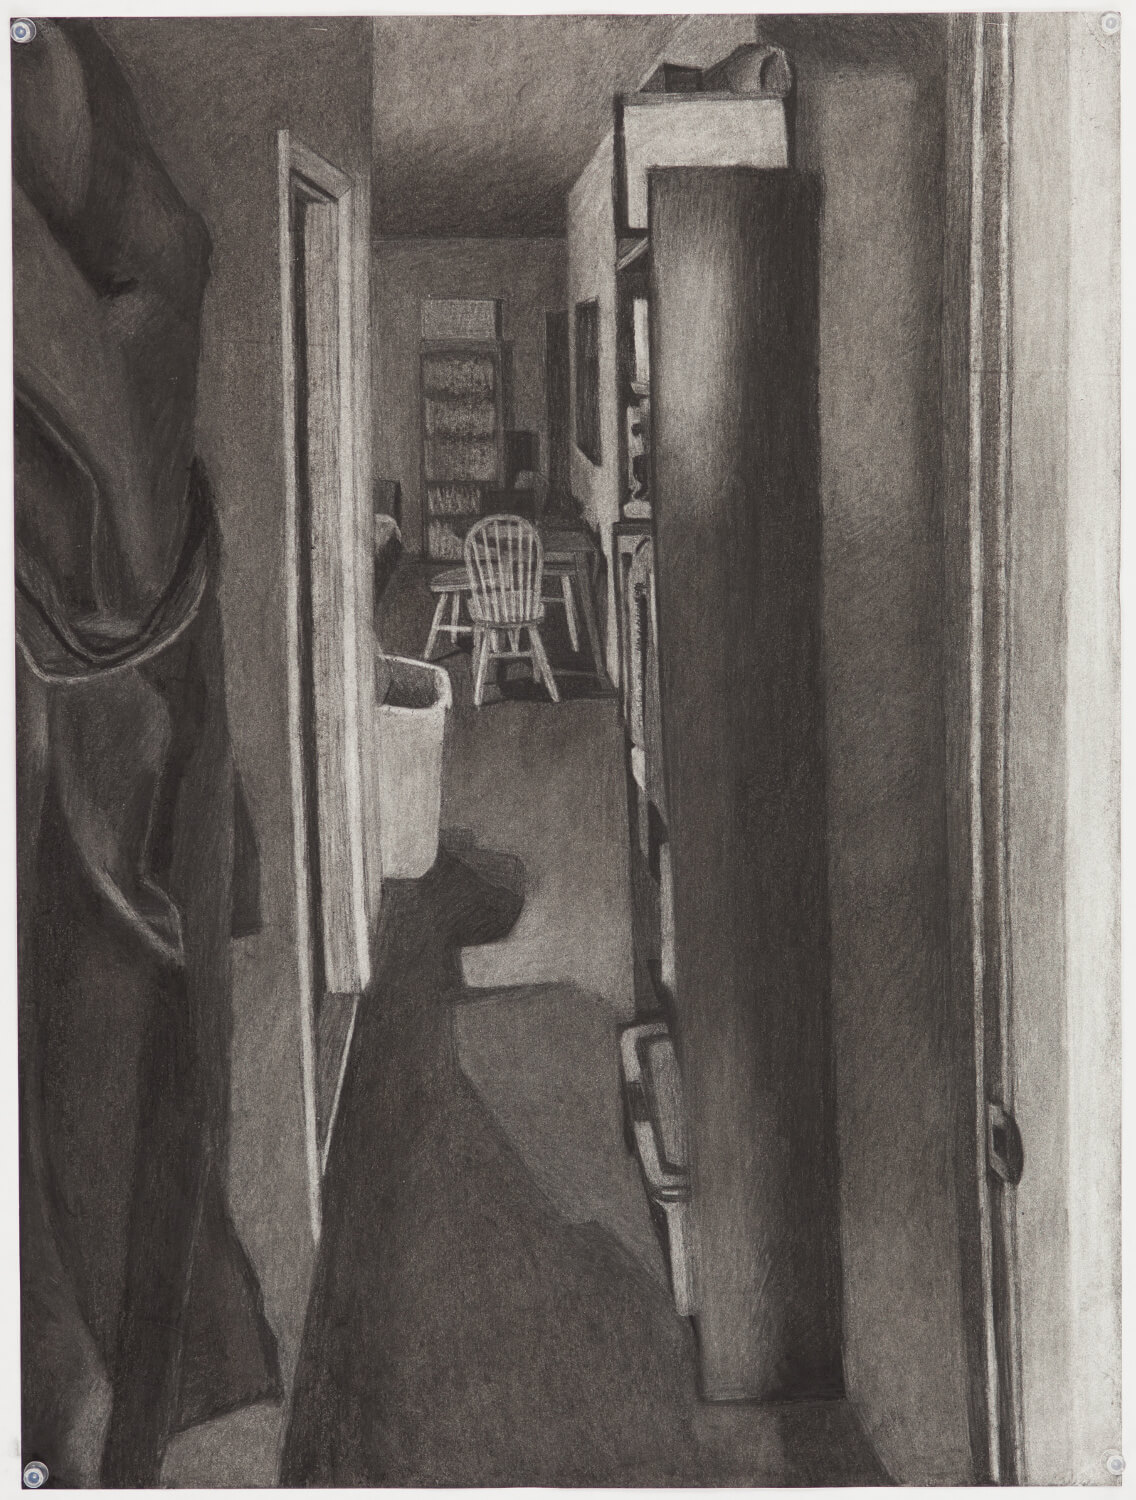 View of Hallway from Bedroom Door